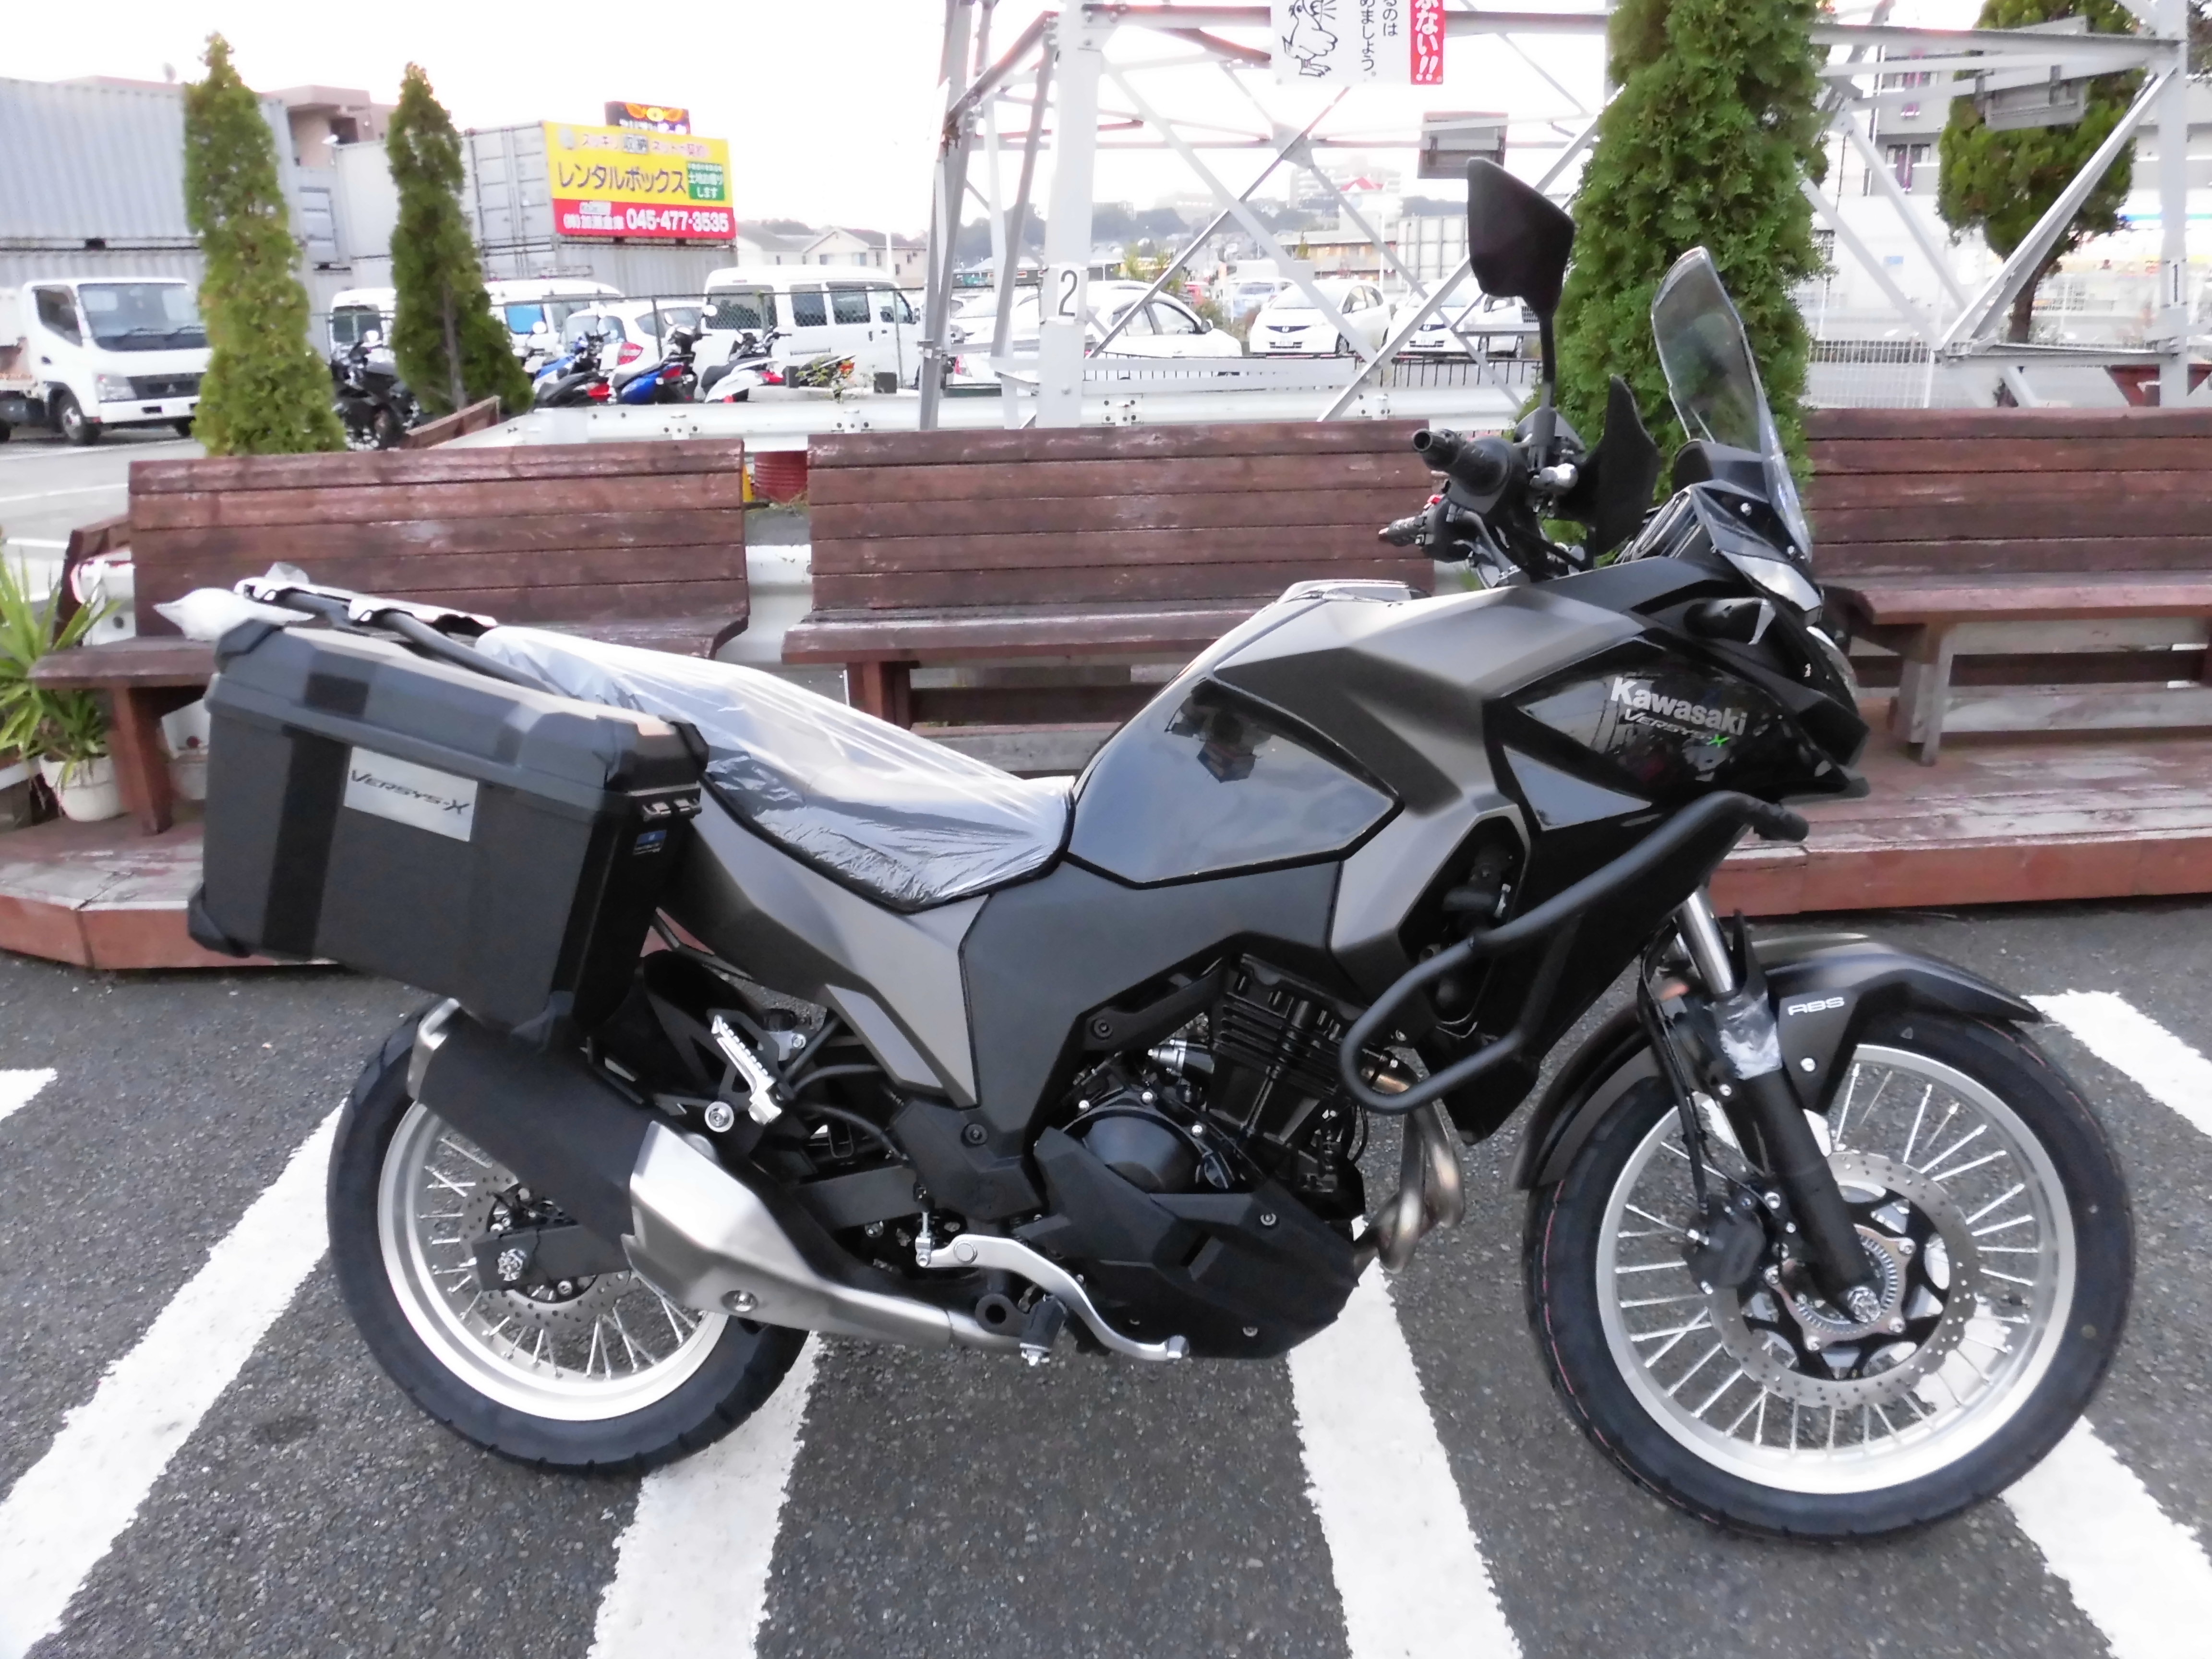 18年モデル Versys X250 Tourer入庫しました 最新情報 U Media ユーメディア 中古 バイク 新車バイク探しの決定版 神奈川 東京でバイク探すならユーメディア